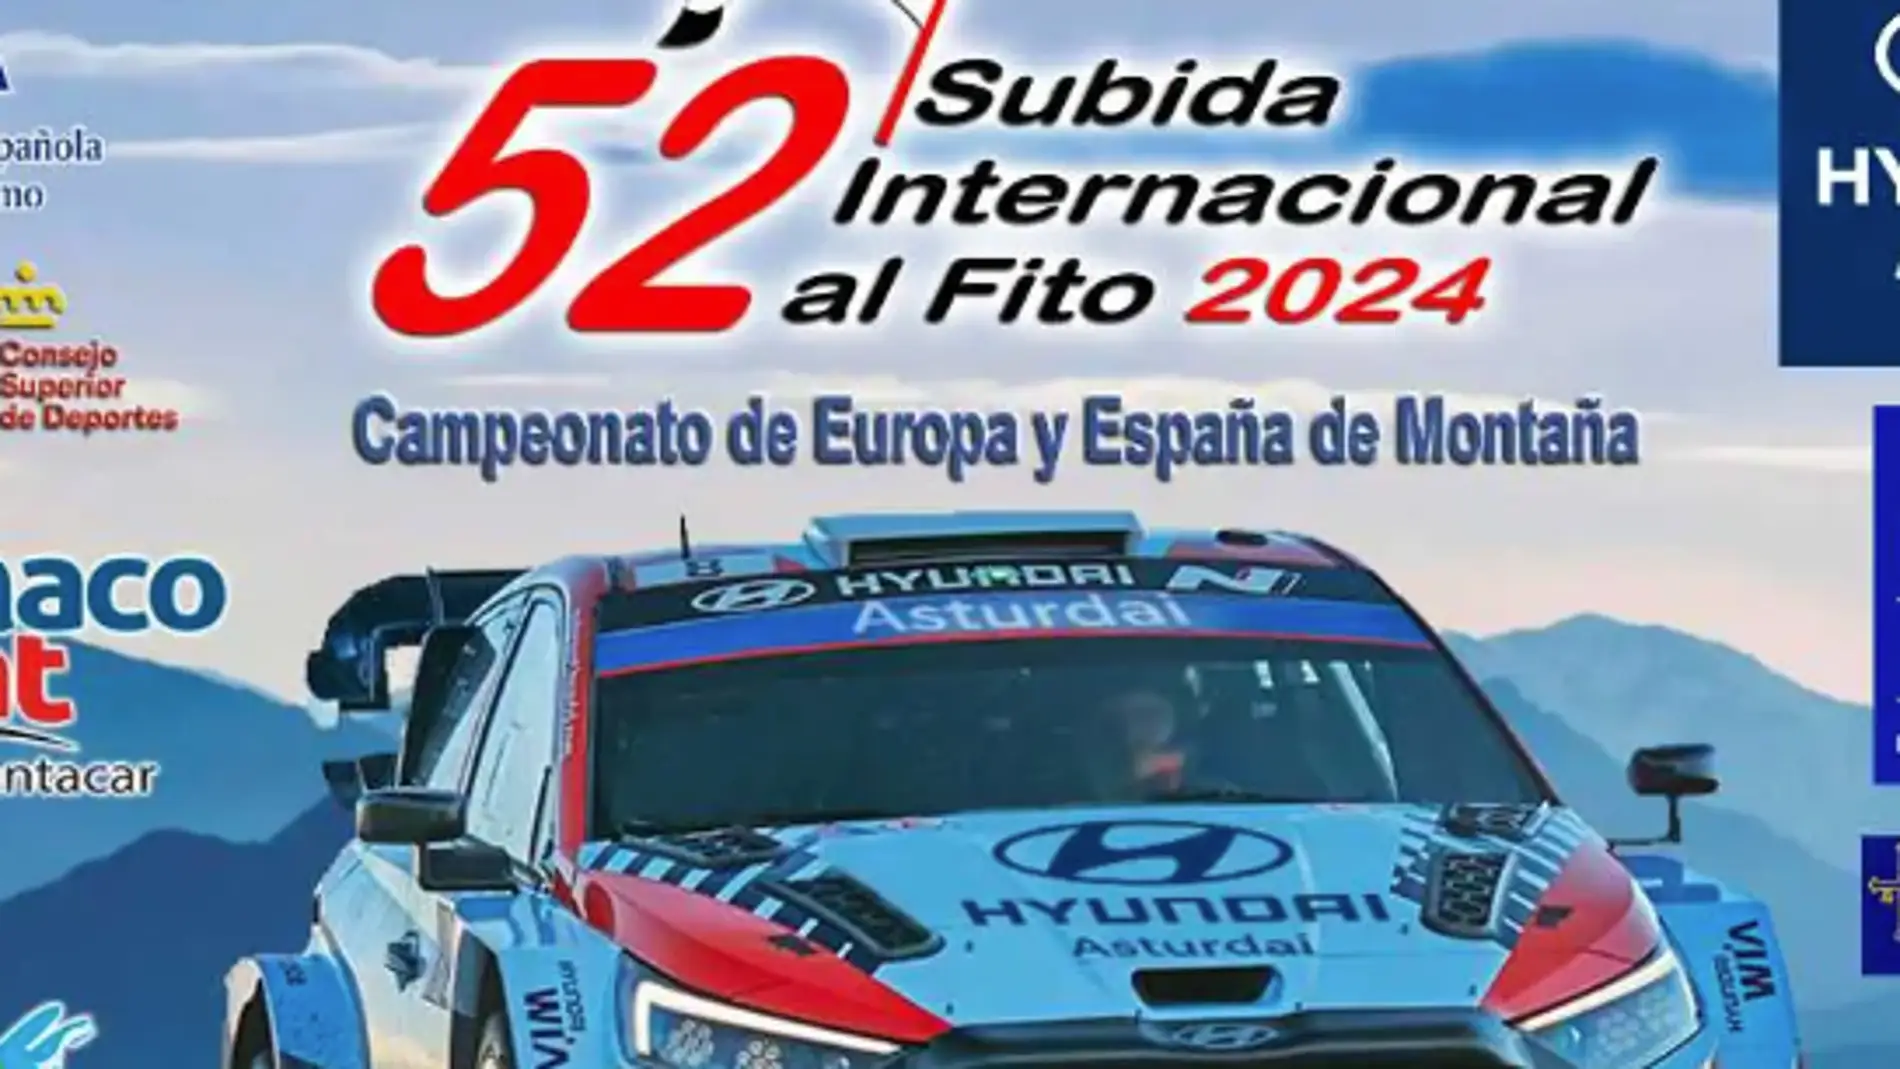 La 52ª edición de la Subida Internacional al Fito se disputa este fin de semana con 78 pilotos inscritos